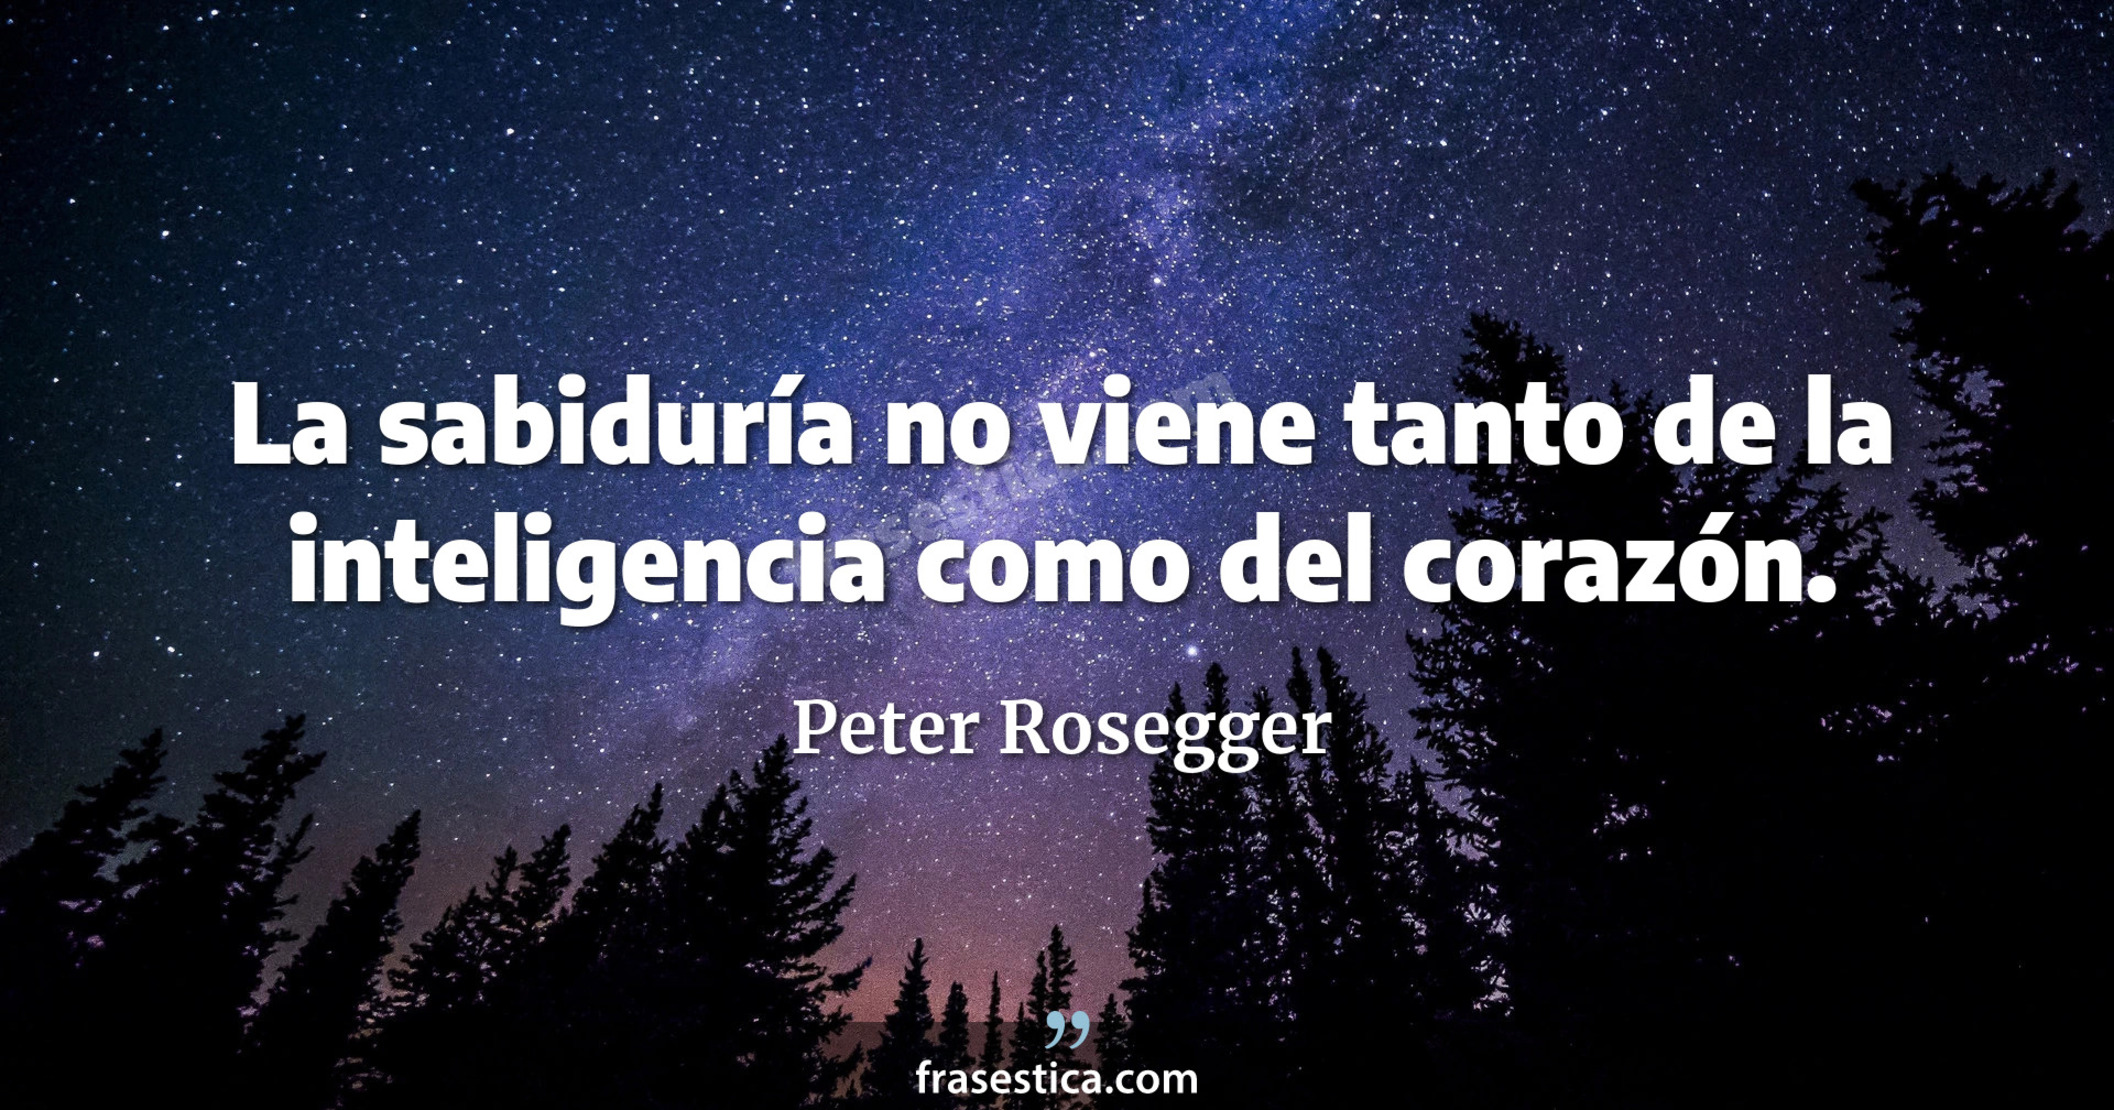 La sabiduría no viene tanto de la inteligencia como del corazón. - Peter Rosegger